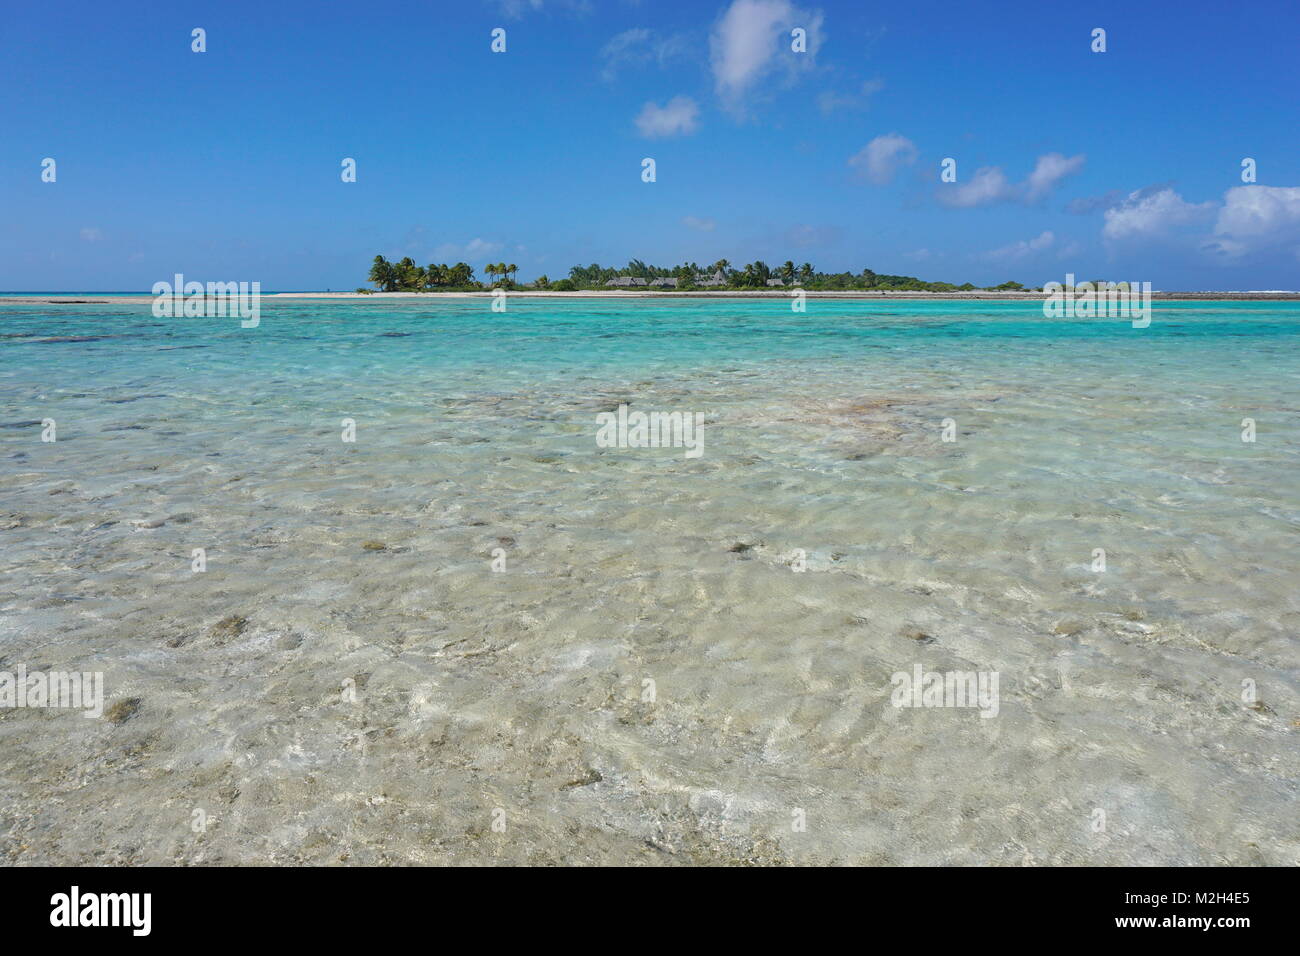 L'eau peu profonde d'une lagune et une île tropicale en arrière-plan, l'atoll de Tikehau, Tuamotu, Polynésie Française, Pacifique sud, l'Océanie Banque D'Images